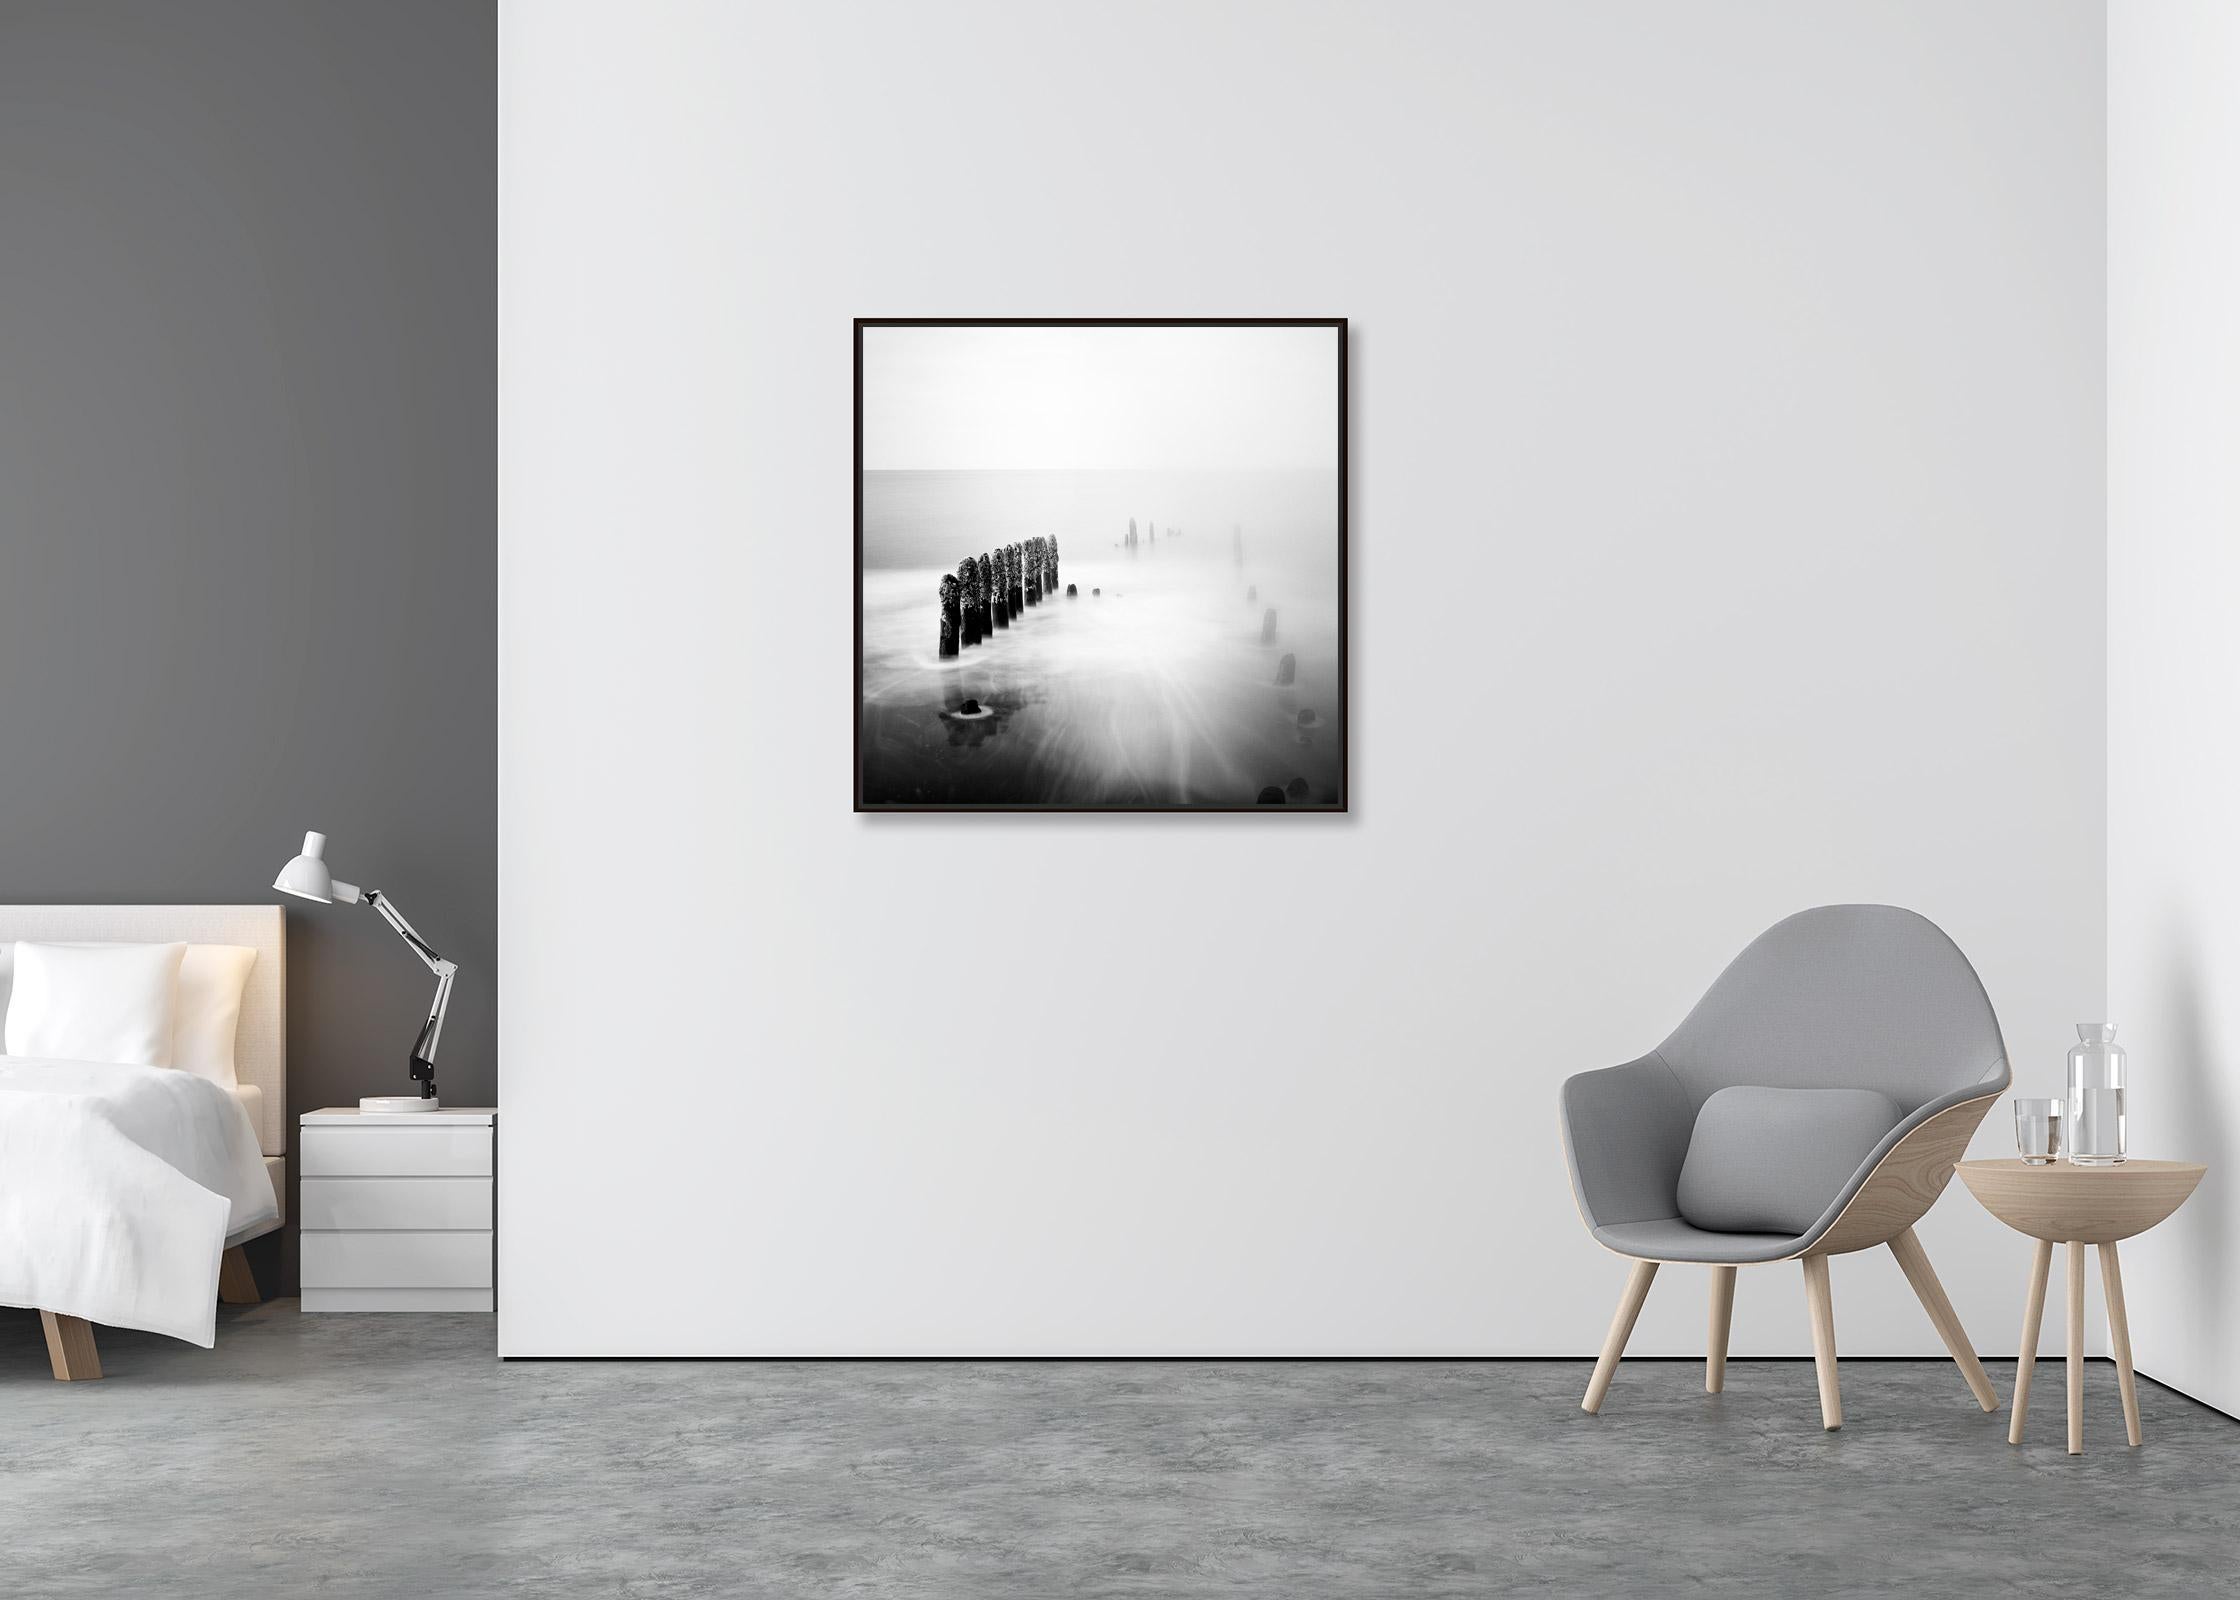 Spargelzeit, Ruegen, Deutschland, minimalistischer, schwarz-weißer Landschaftsdruck (Zeitgenössisch), Photograph, von Gerald Berghammer